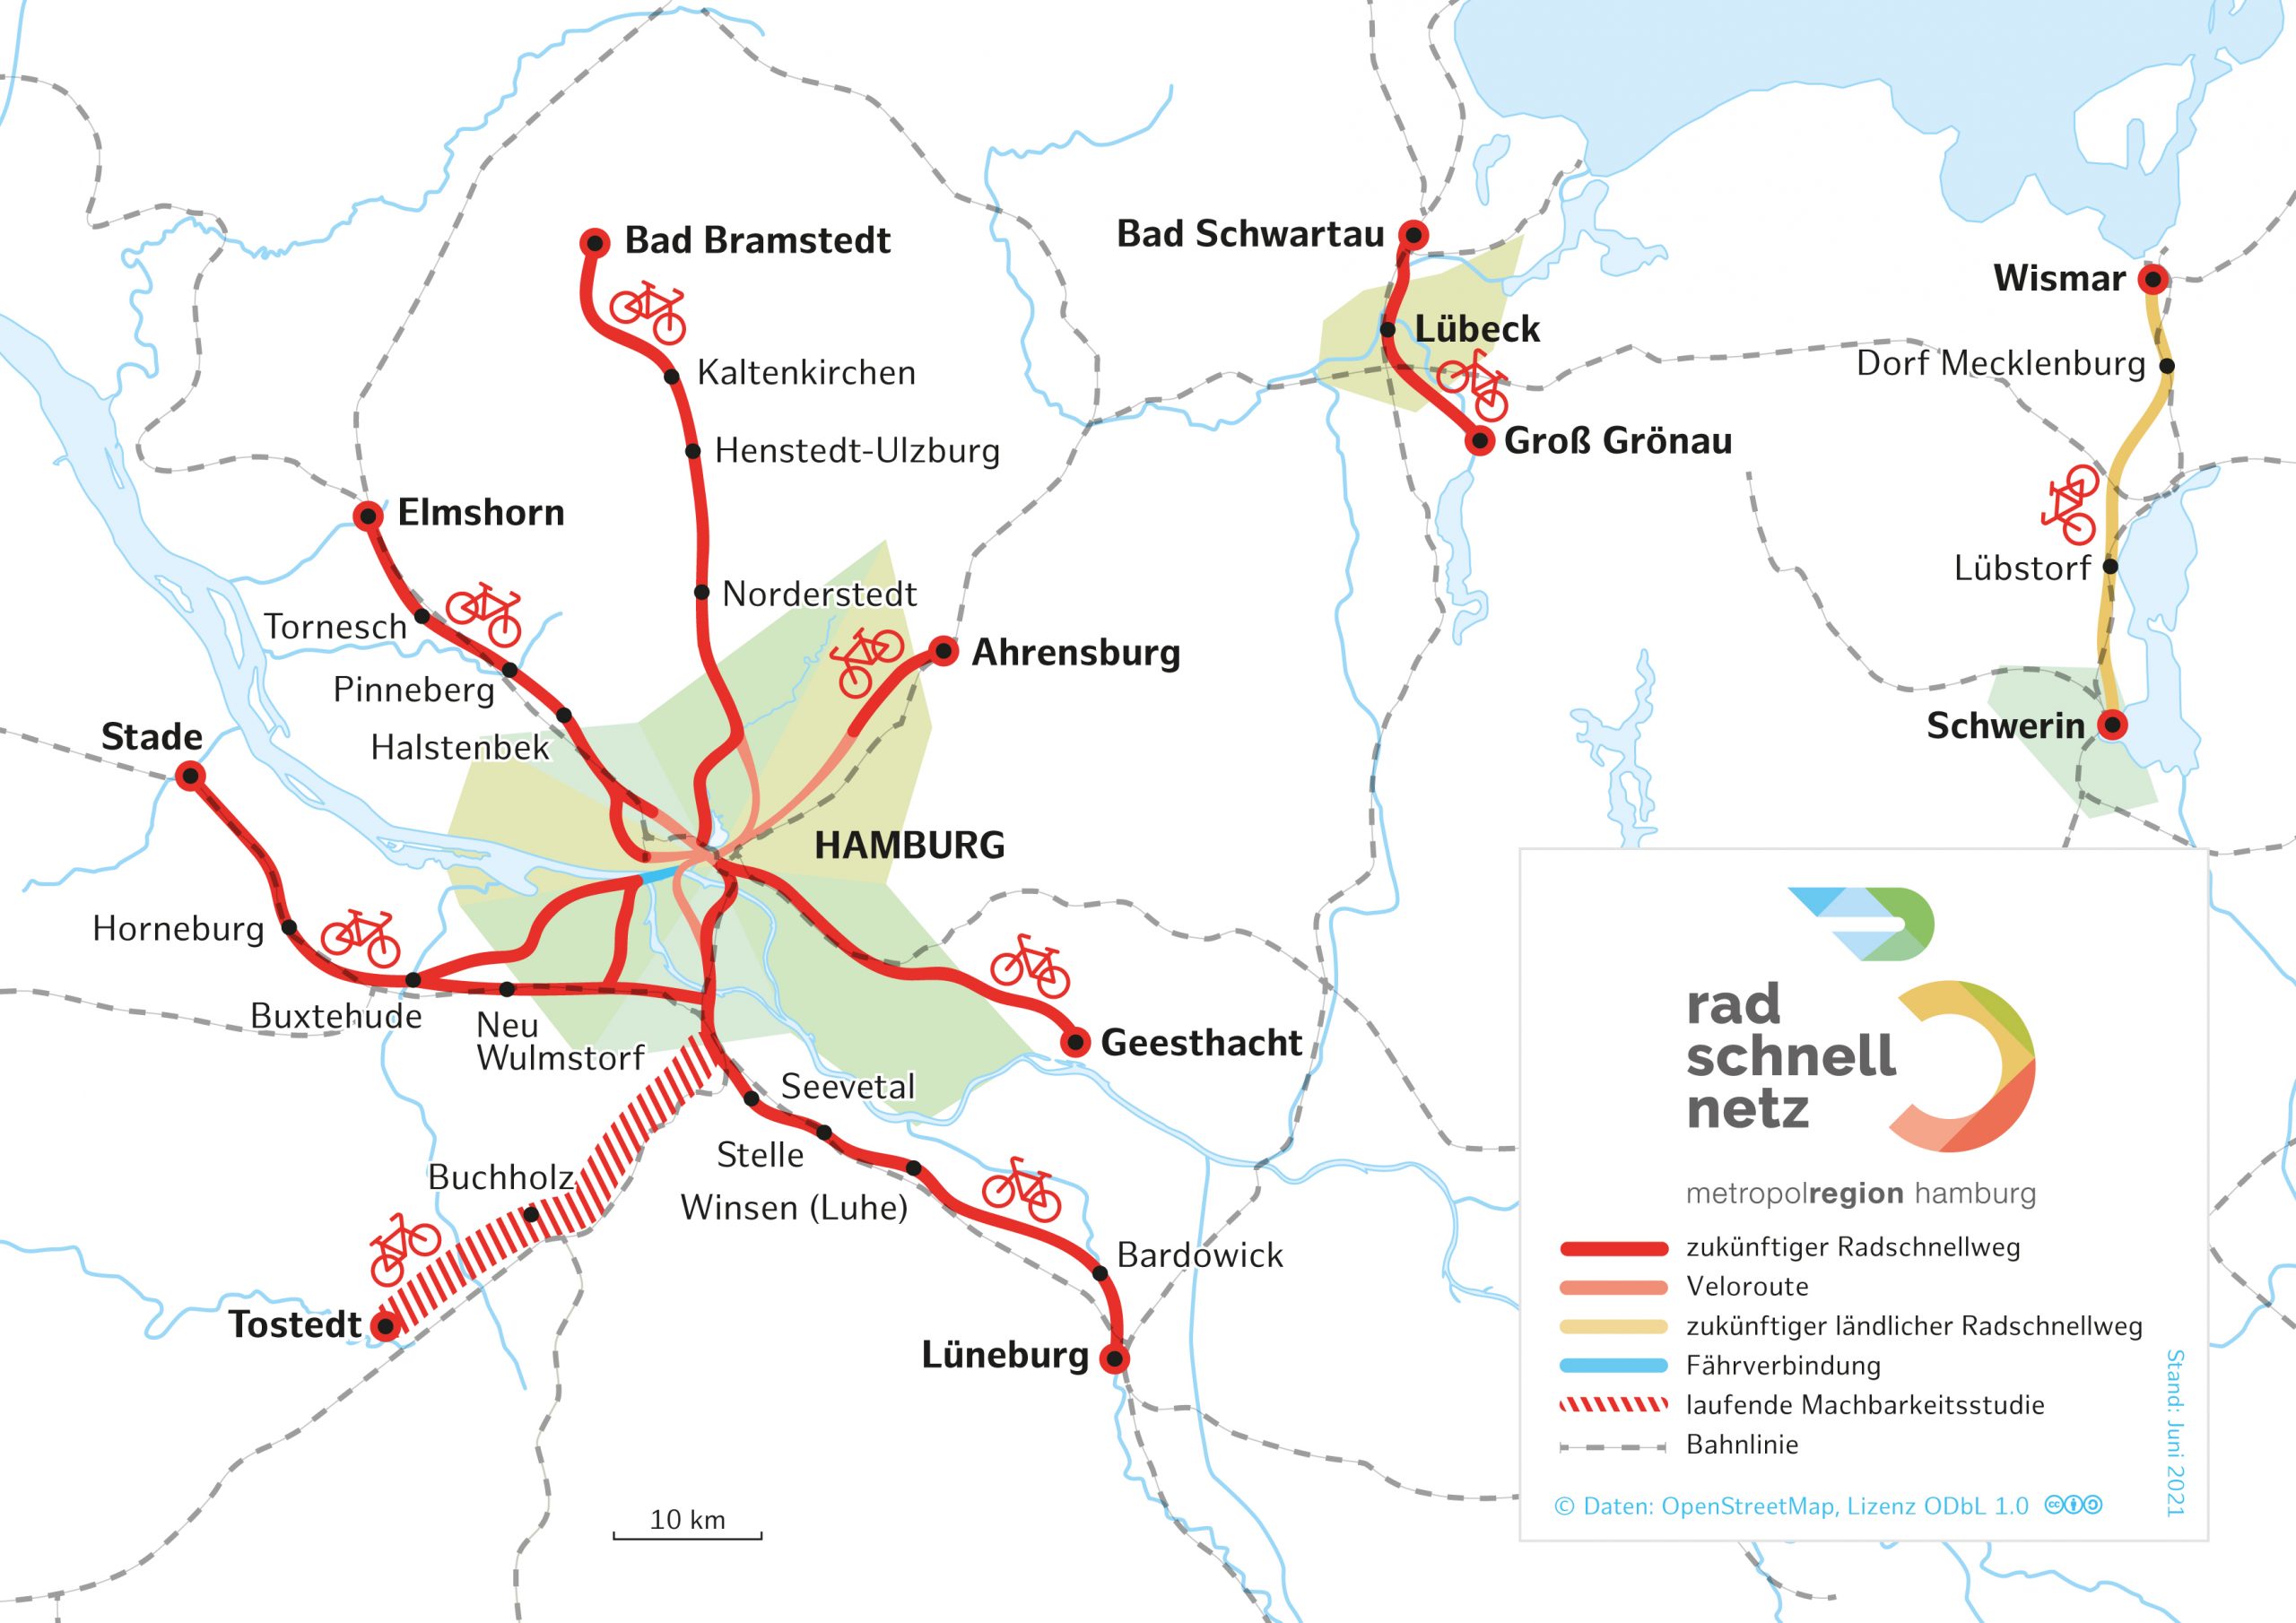 Radschnellnetz Metropolregion Hamburg